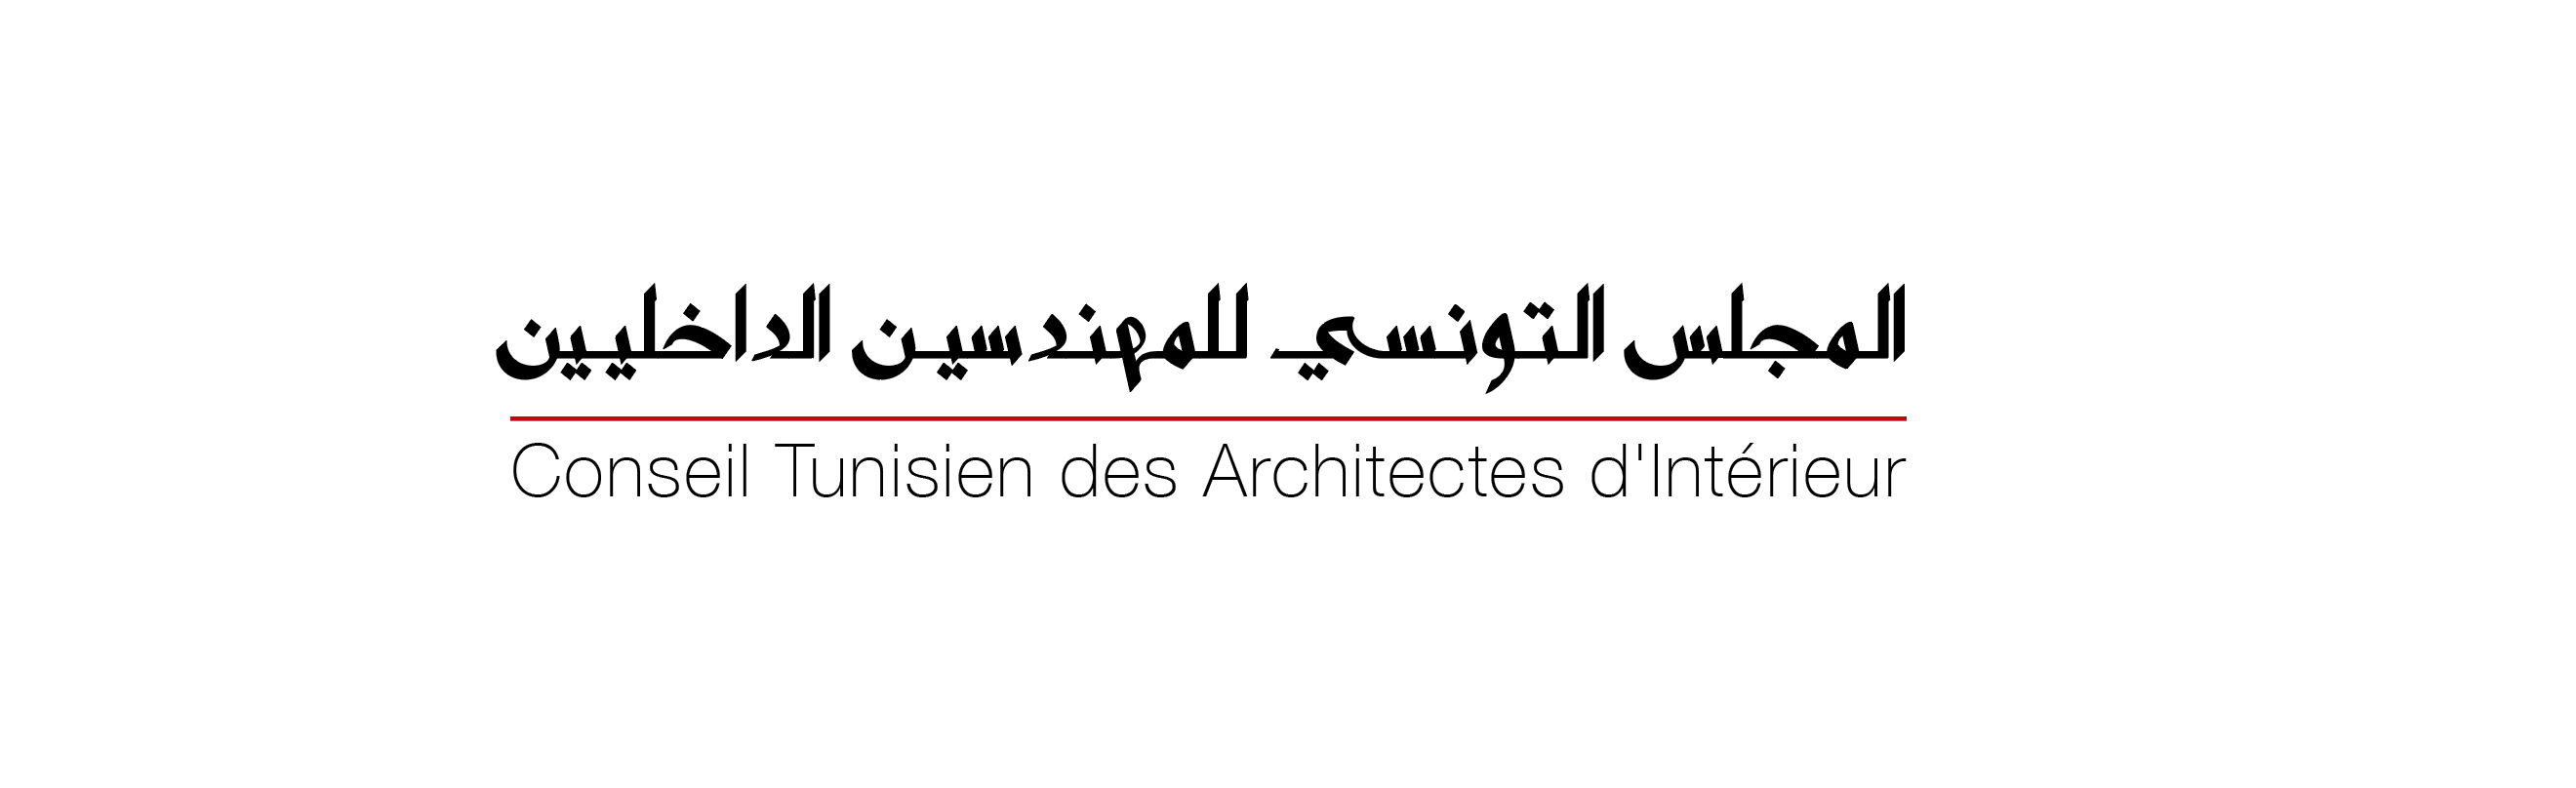 Tunisie: Les architectes d’intérieur se donnent une deuxième représentation syndicale